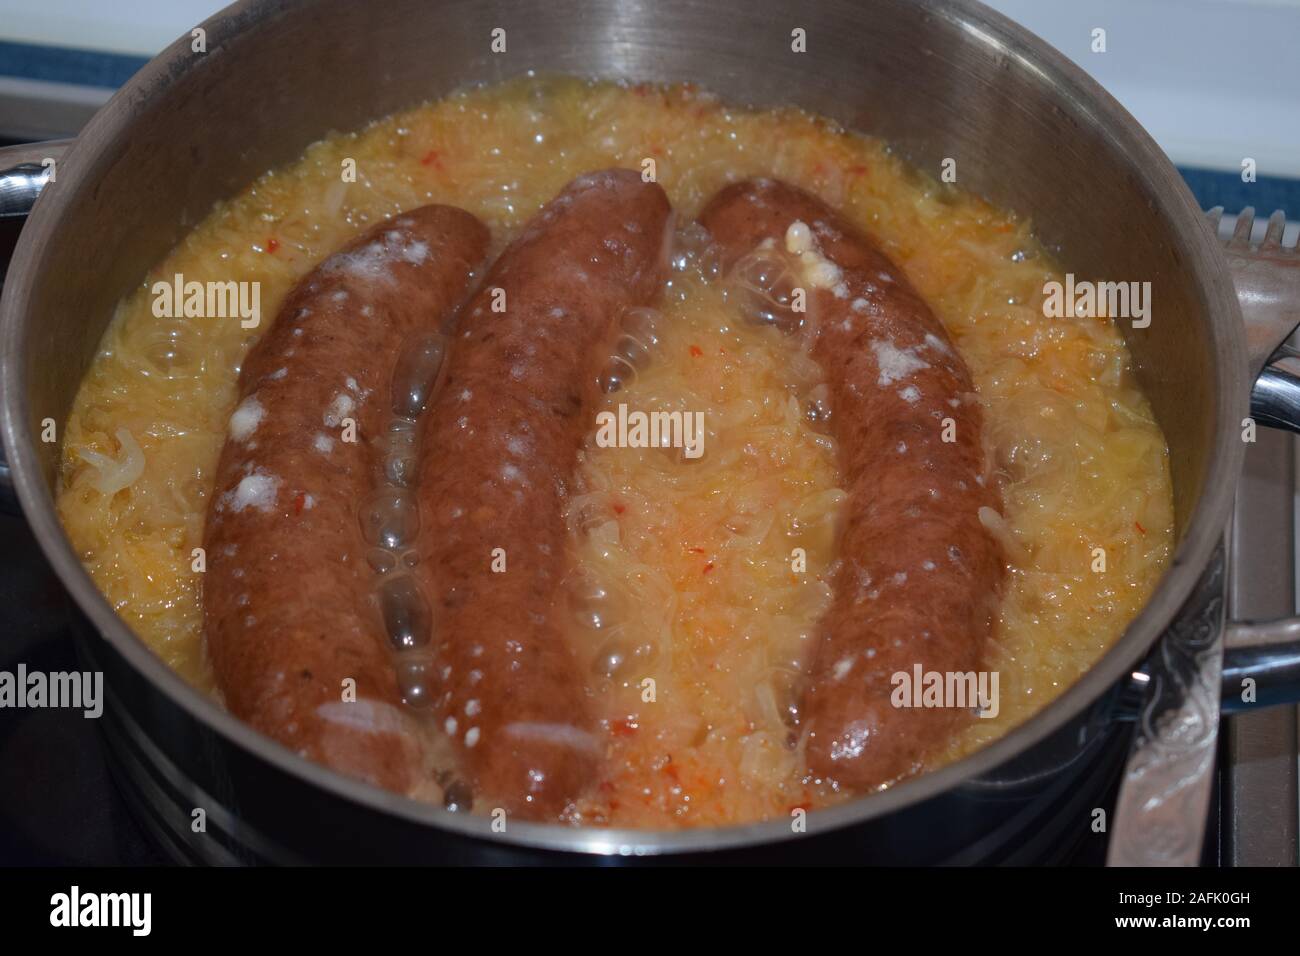 saussages in Sauerkraut Stock Photo